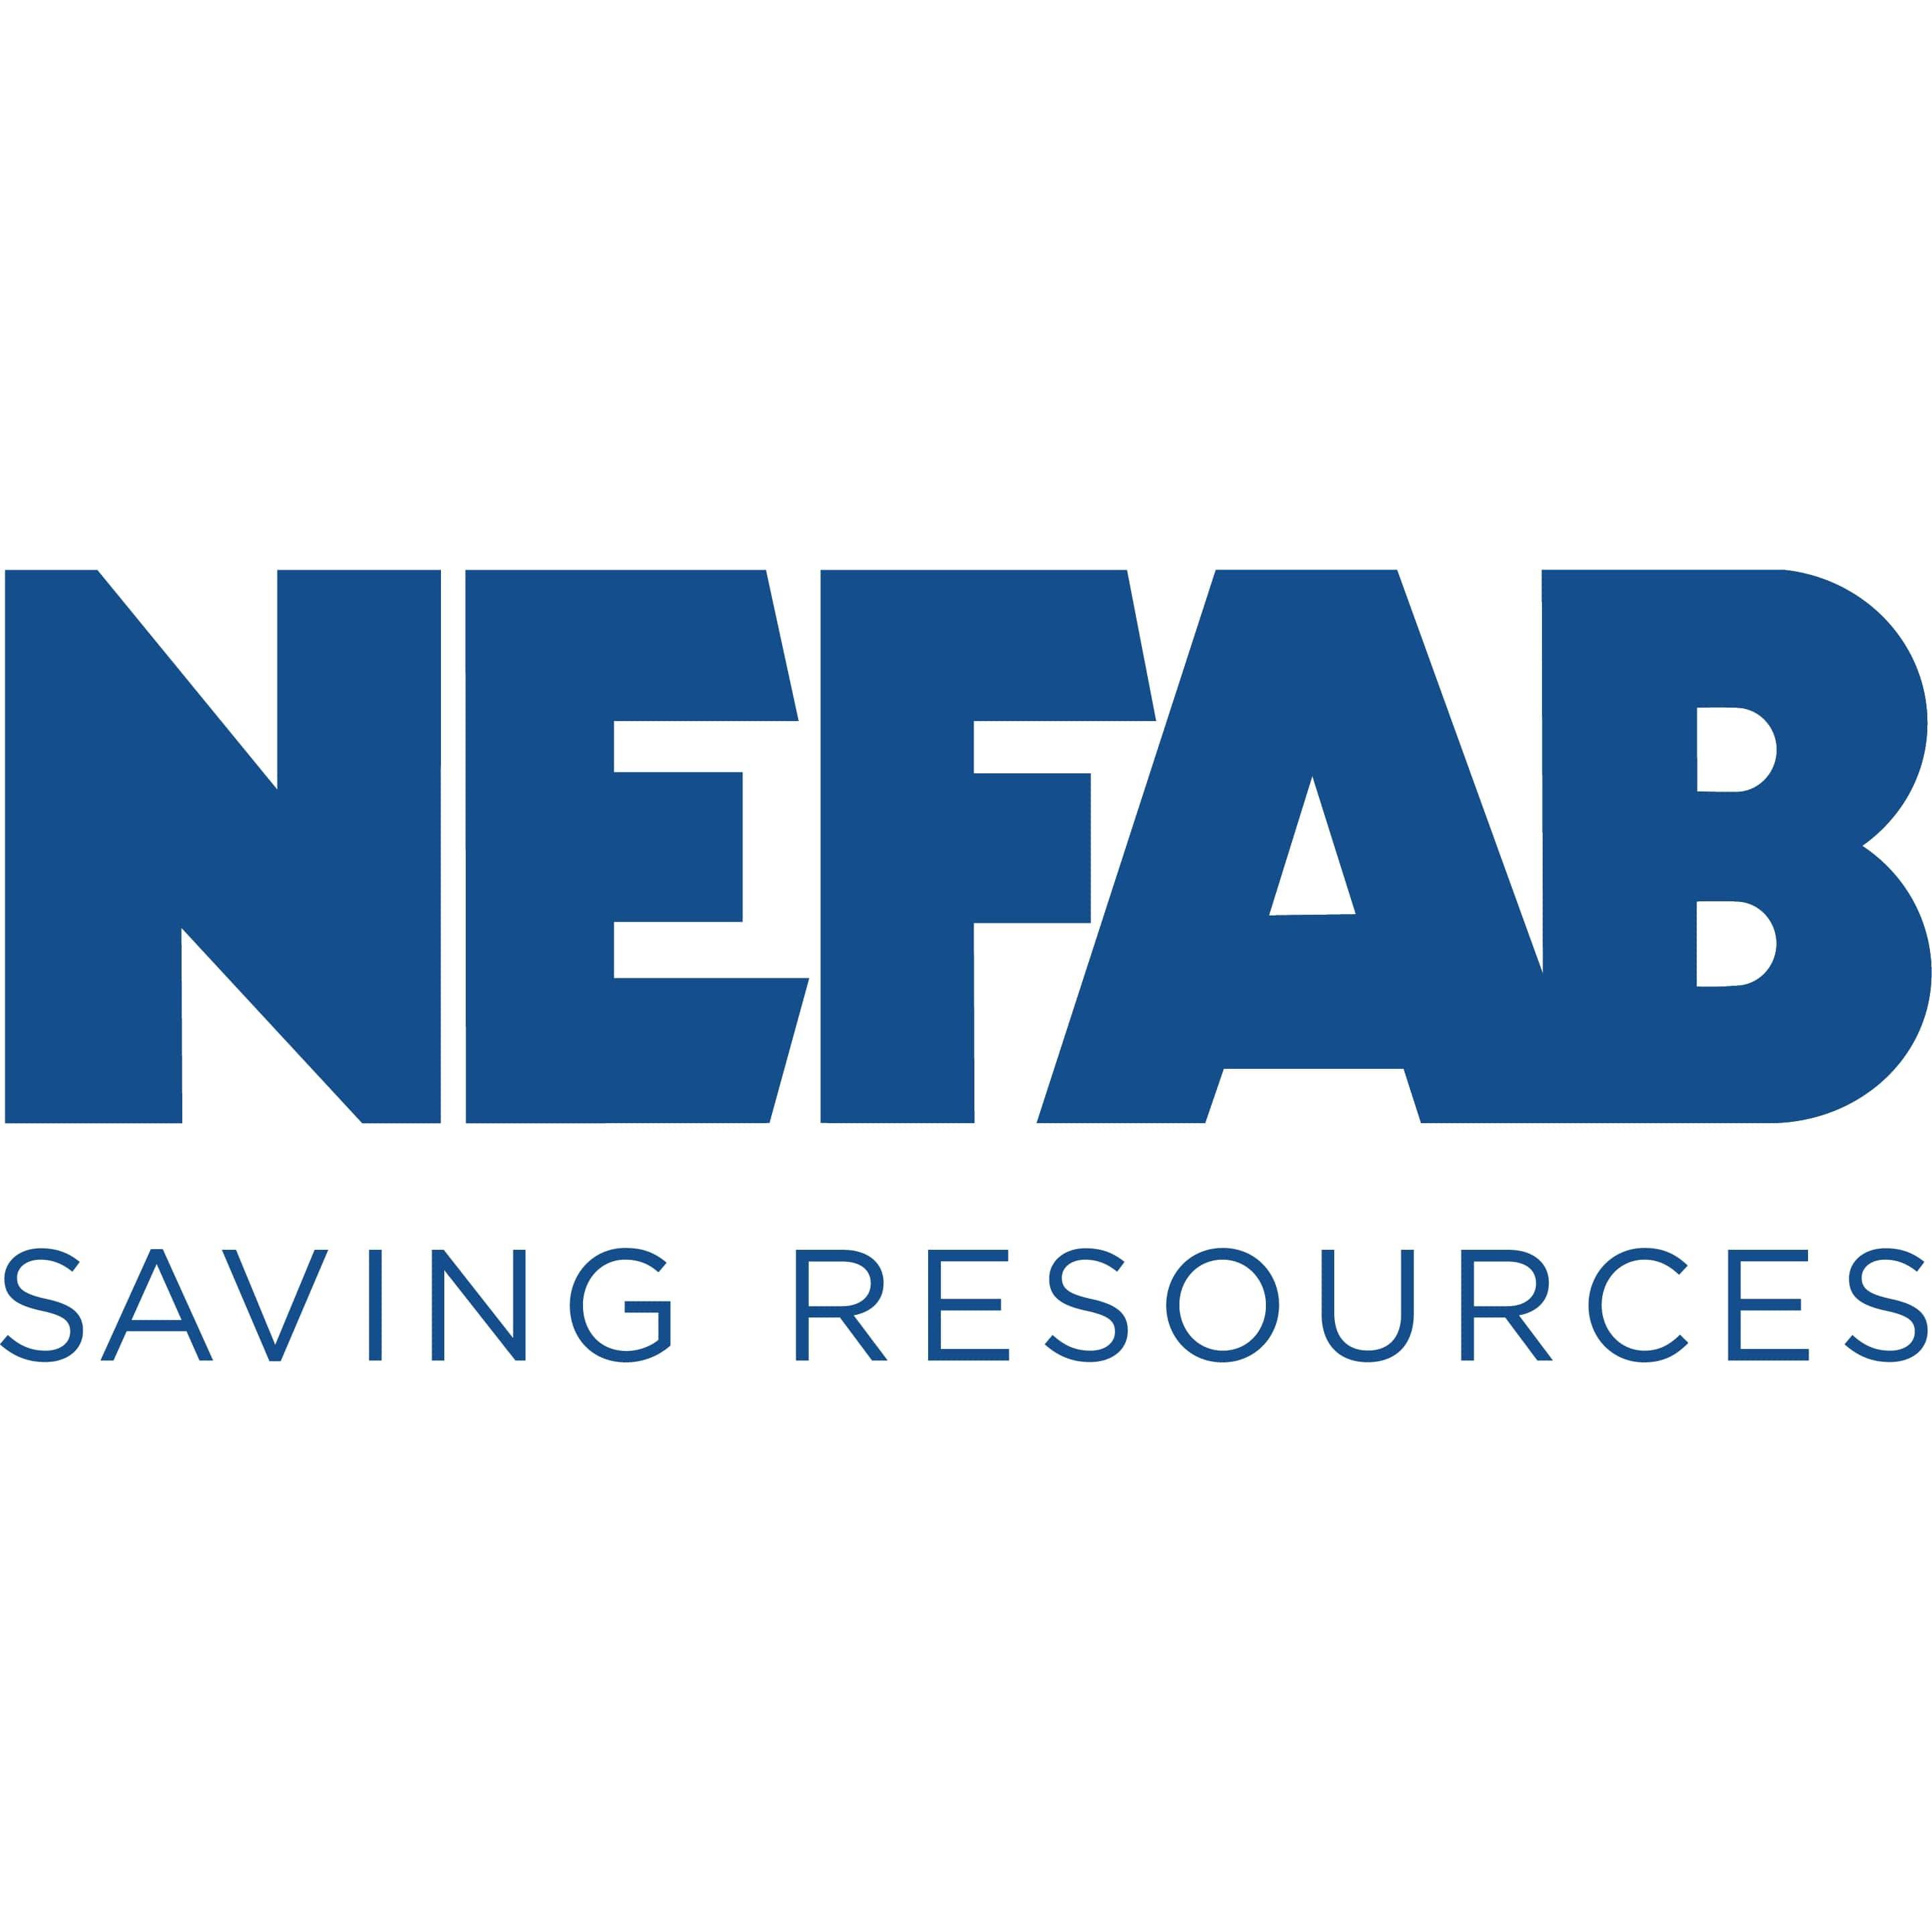 Nefab Oy Ab Logo